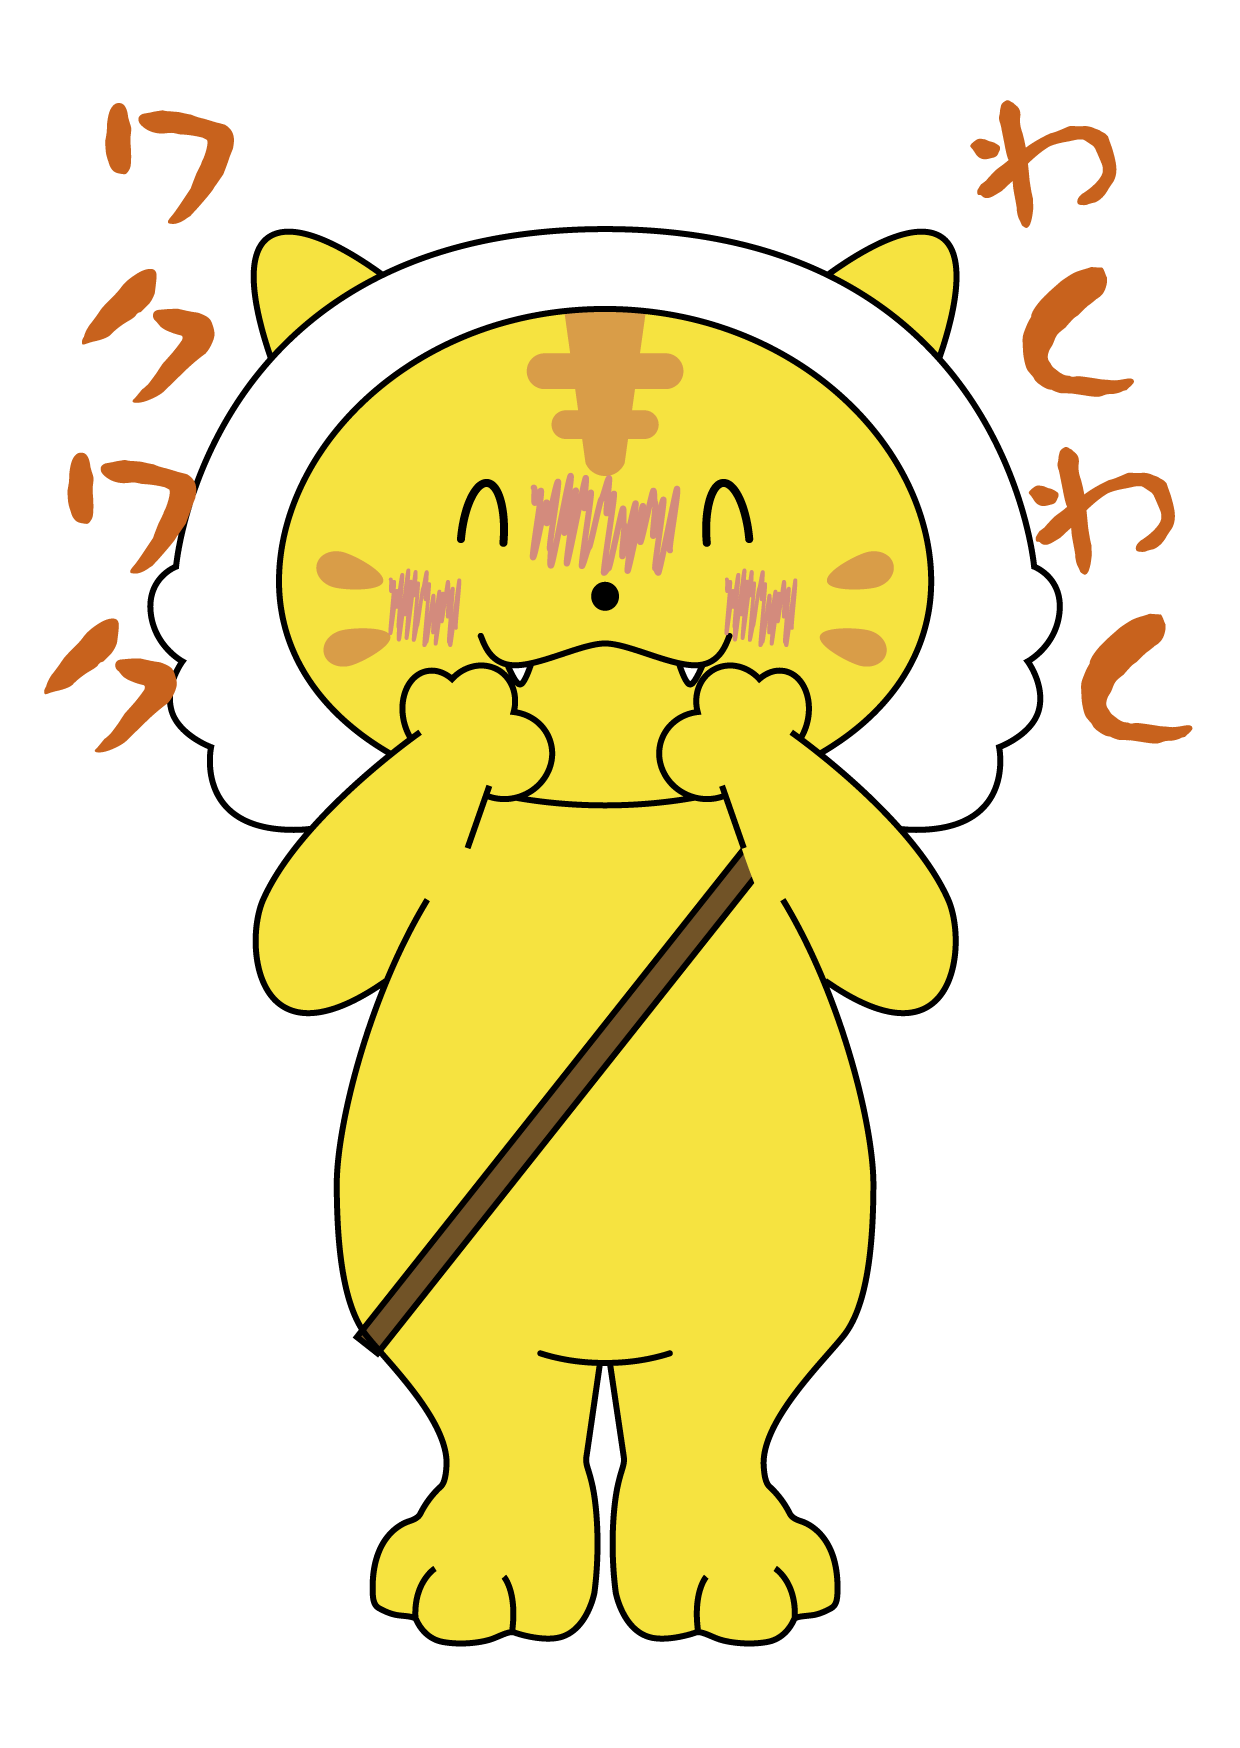 口に手を当てる黄色い猫のイラスト